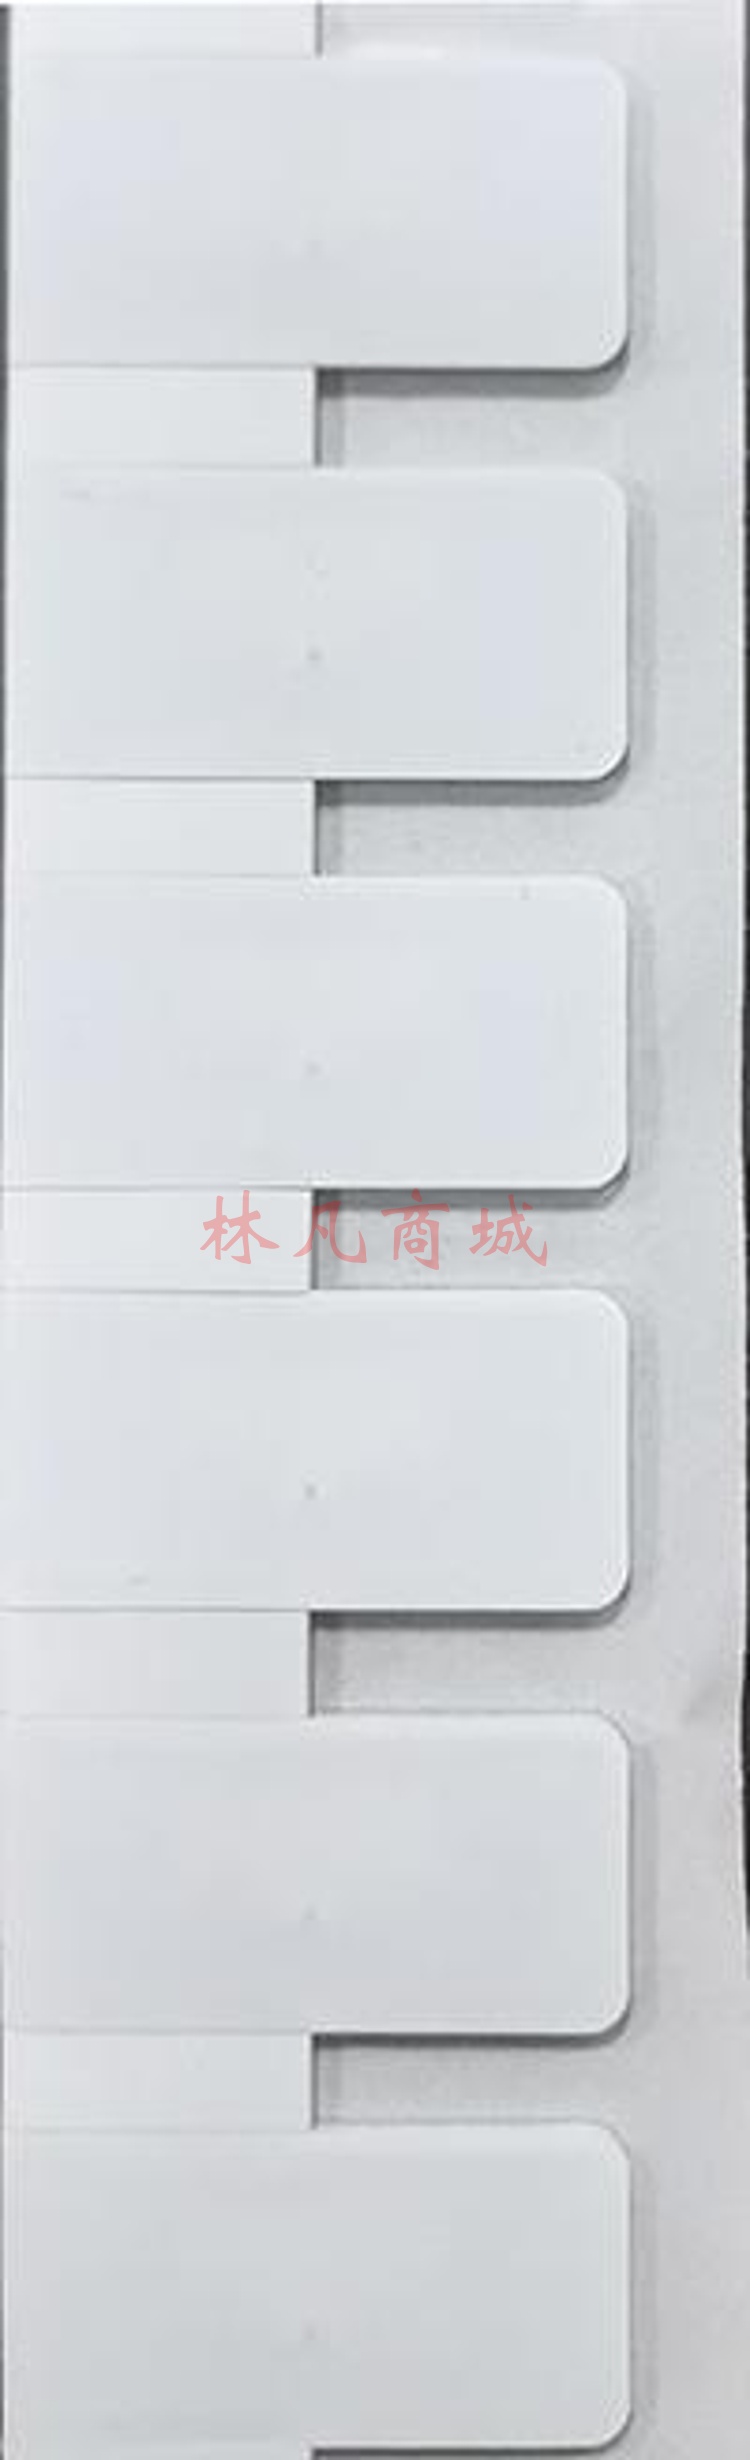 信实达 XSD-302 RFID抗金属标签